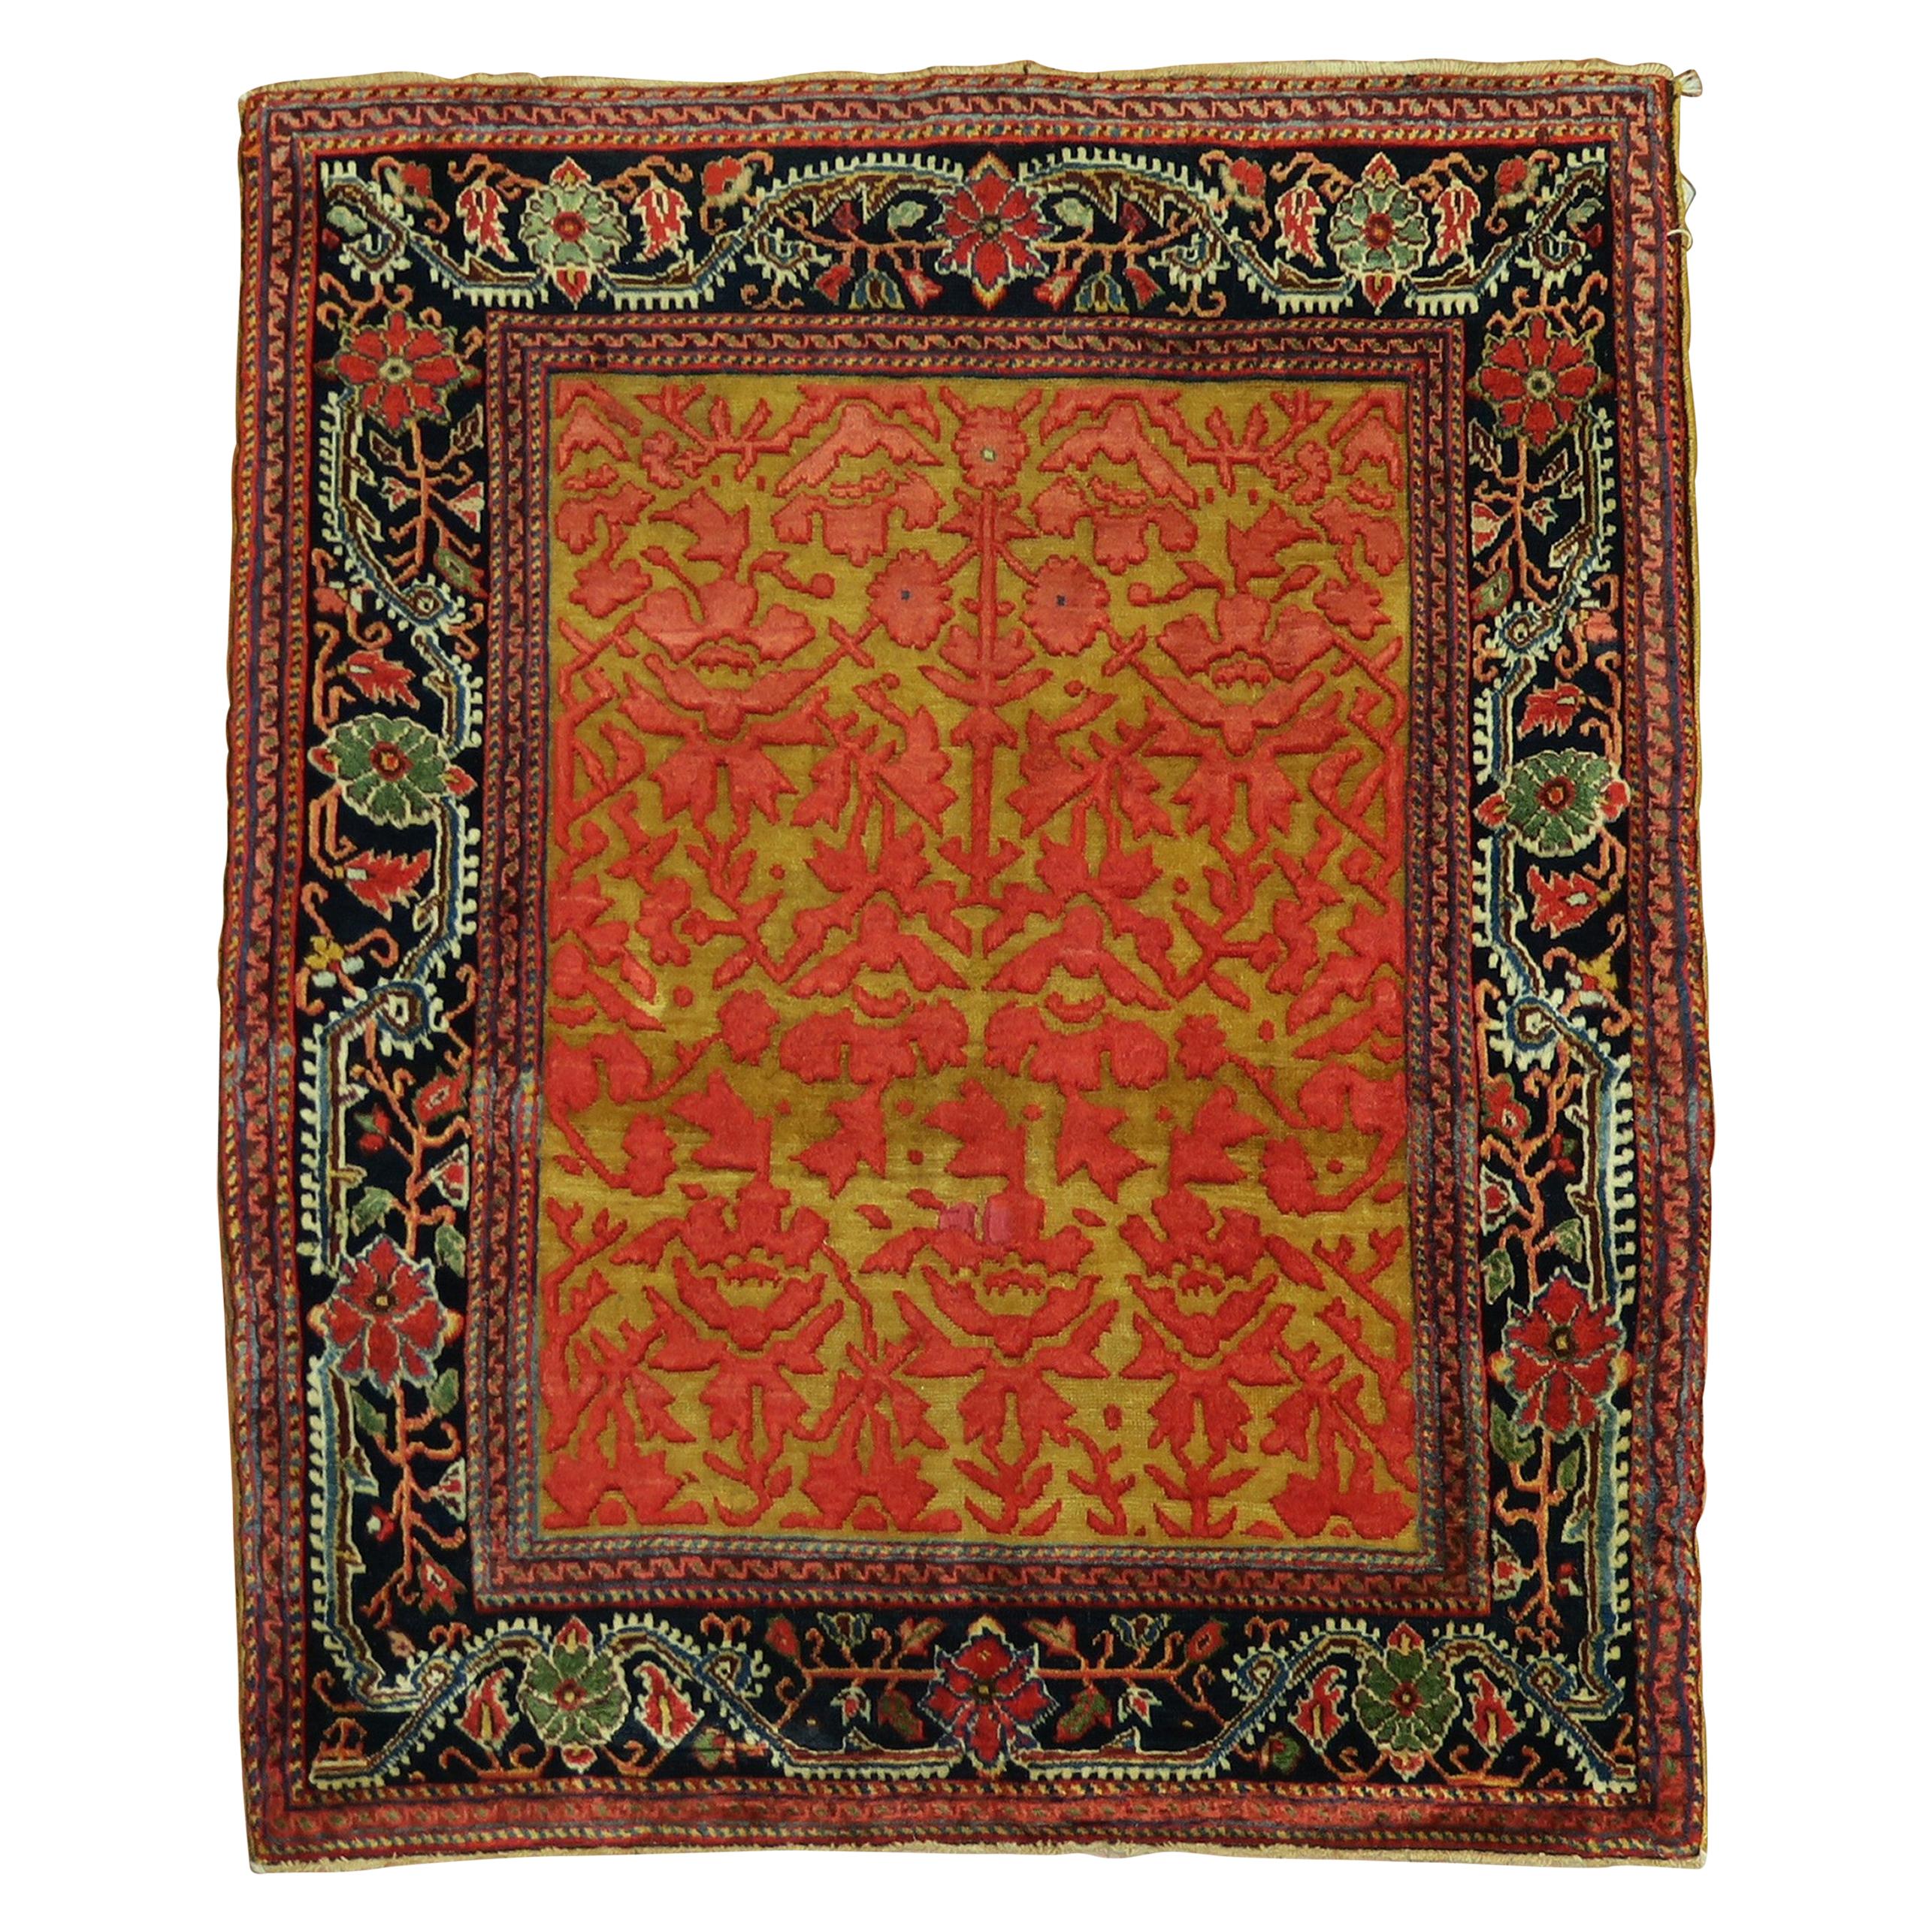 Juwel Ton frühen 20. Jahrhundert Superfine Qualität antiken persischen Jozan Souf Matte